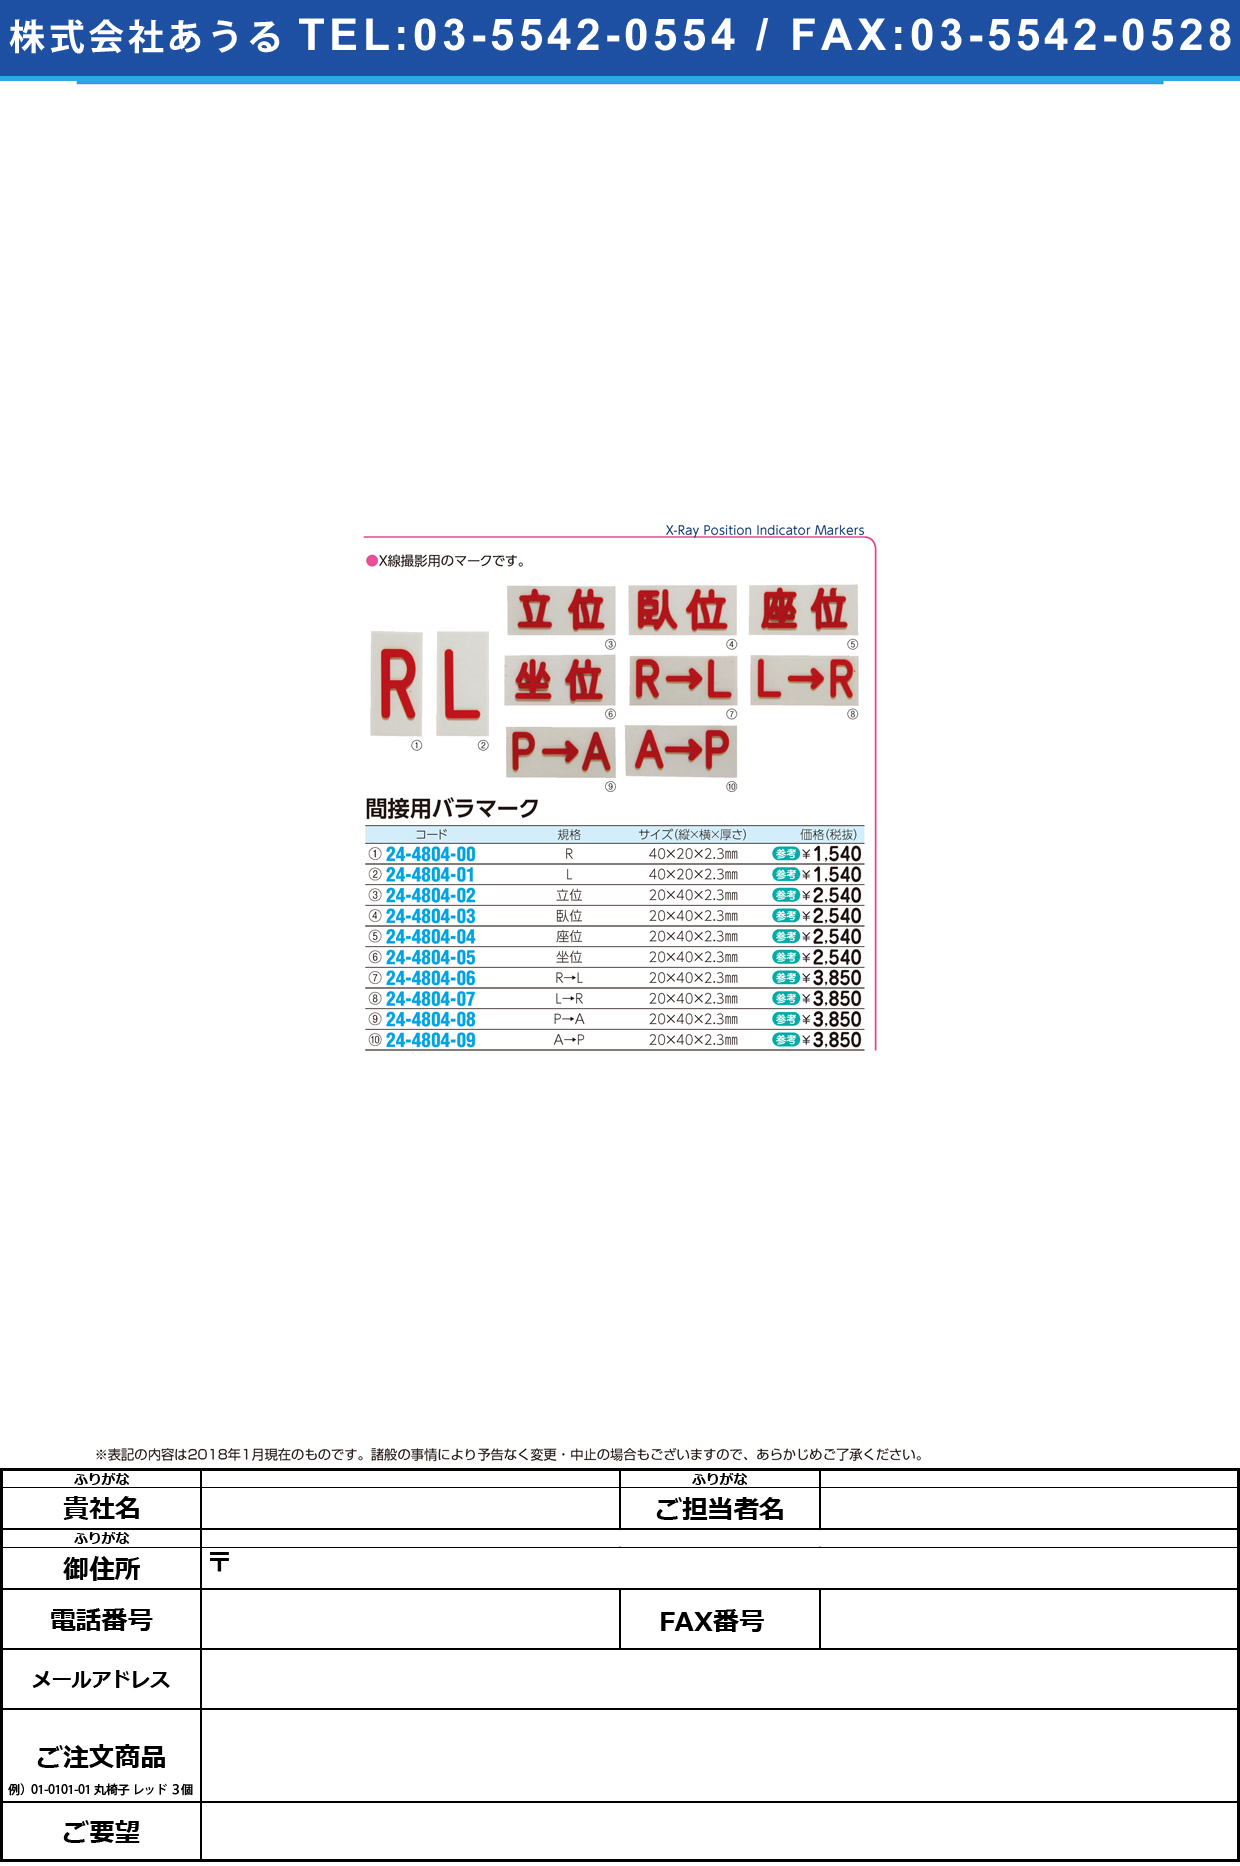 (24-4804-04)間接用バラマーク座位 20X40X2.3MM ｶﾝｾﾂﾖｳﾊﾞﾗﾏｰｸ【1個単位】【2019年カタログ商品】